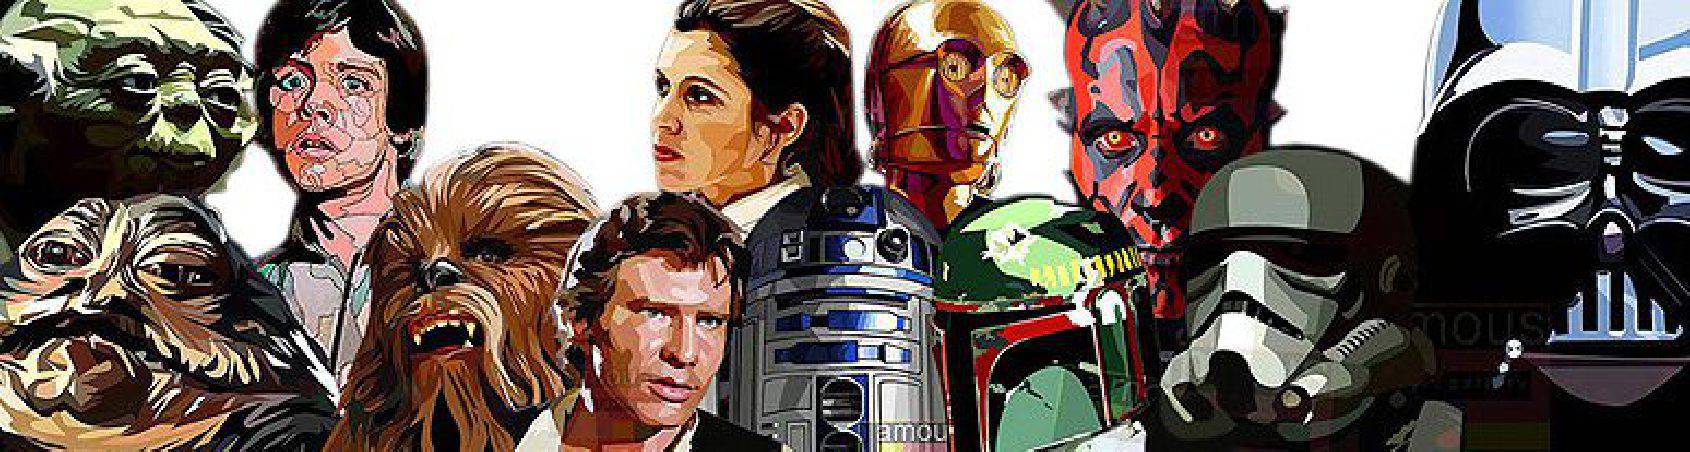 personnages Star-Wars | images pour décorer style Pop-Art